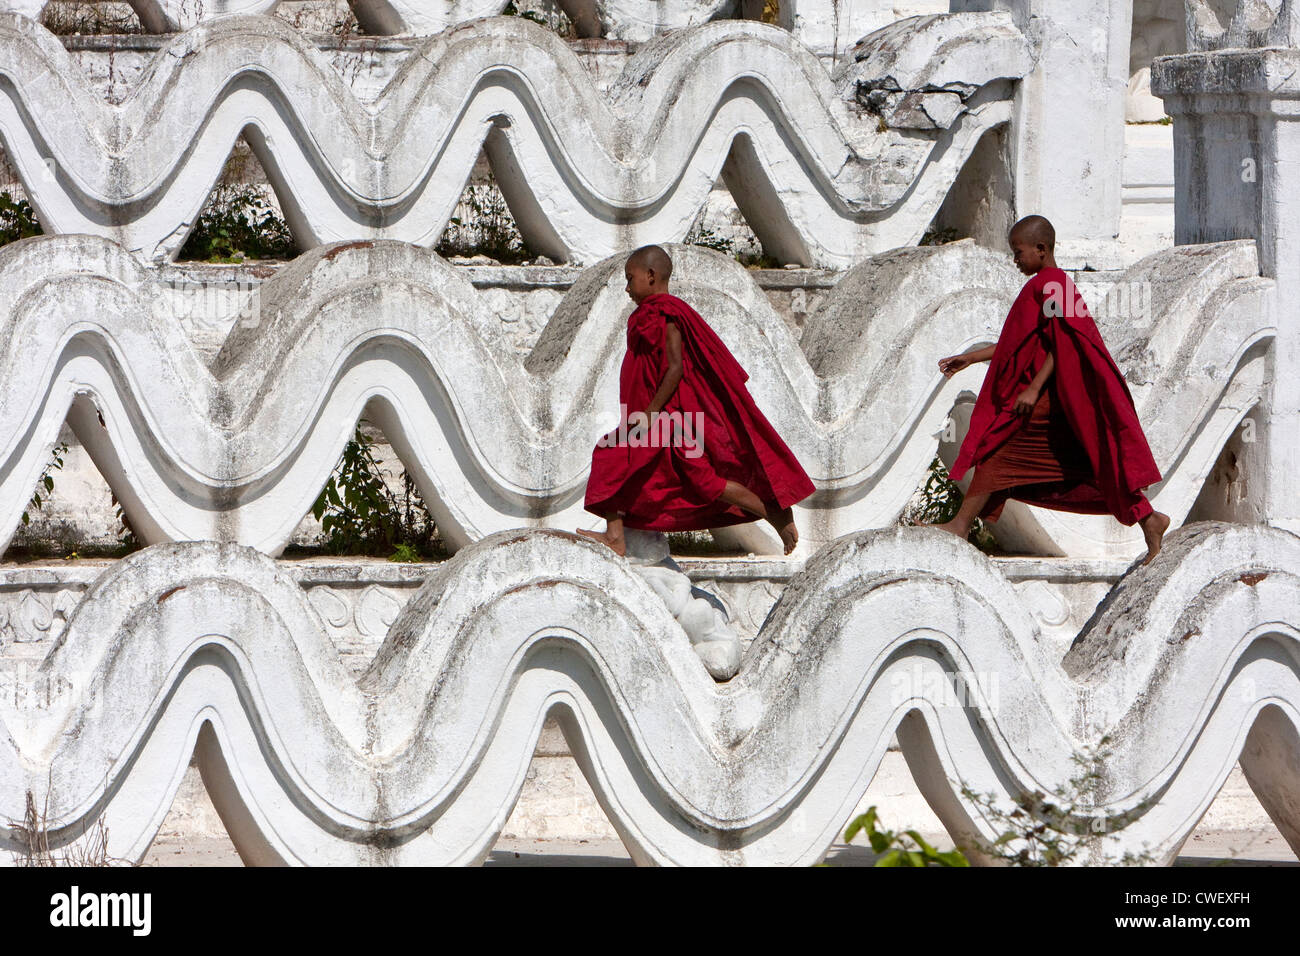 Le Myanmar, Birmanie. Mingun, près de Mandalay. Deux jeunes moines bouddhistes débutants marche sur l'Hsinbyume Paya, un stupa construit en 1816. Banque D'Images